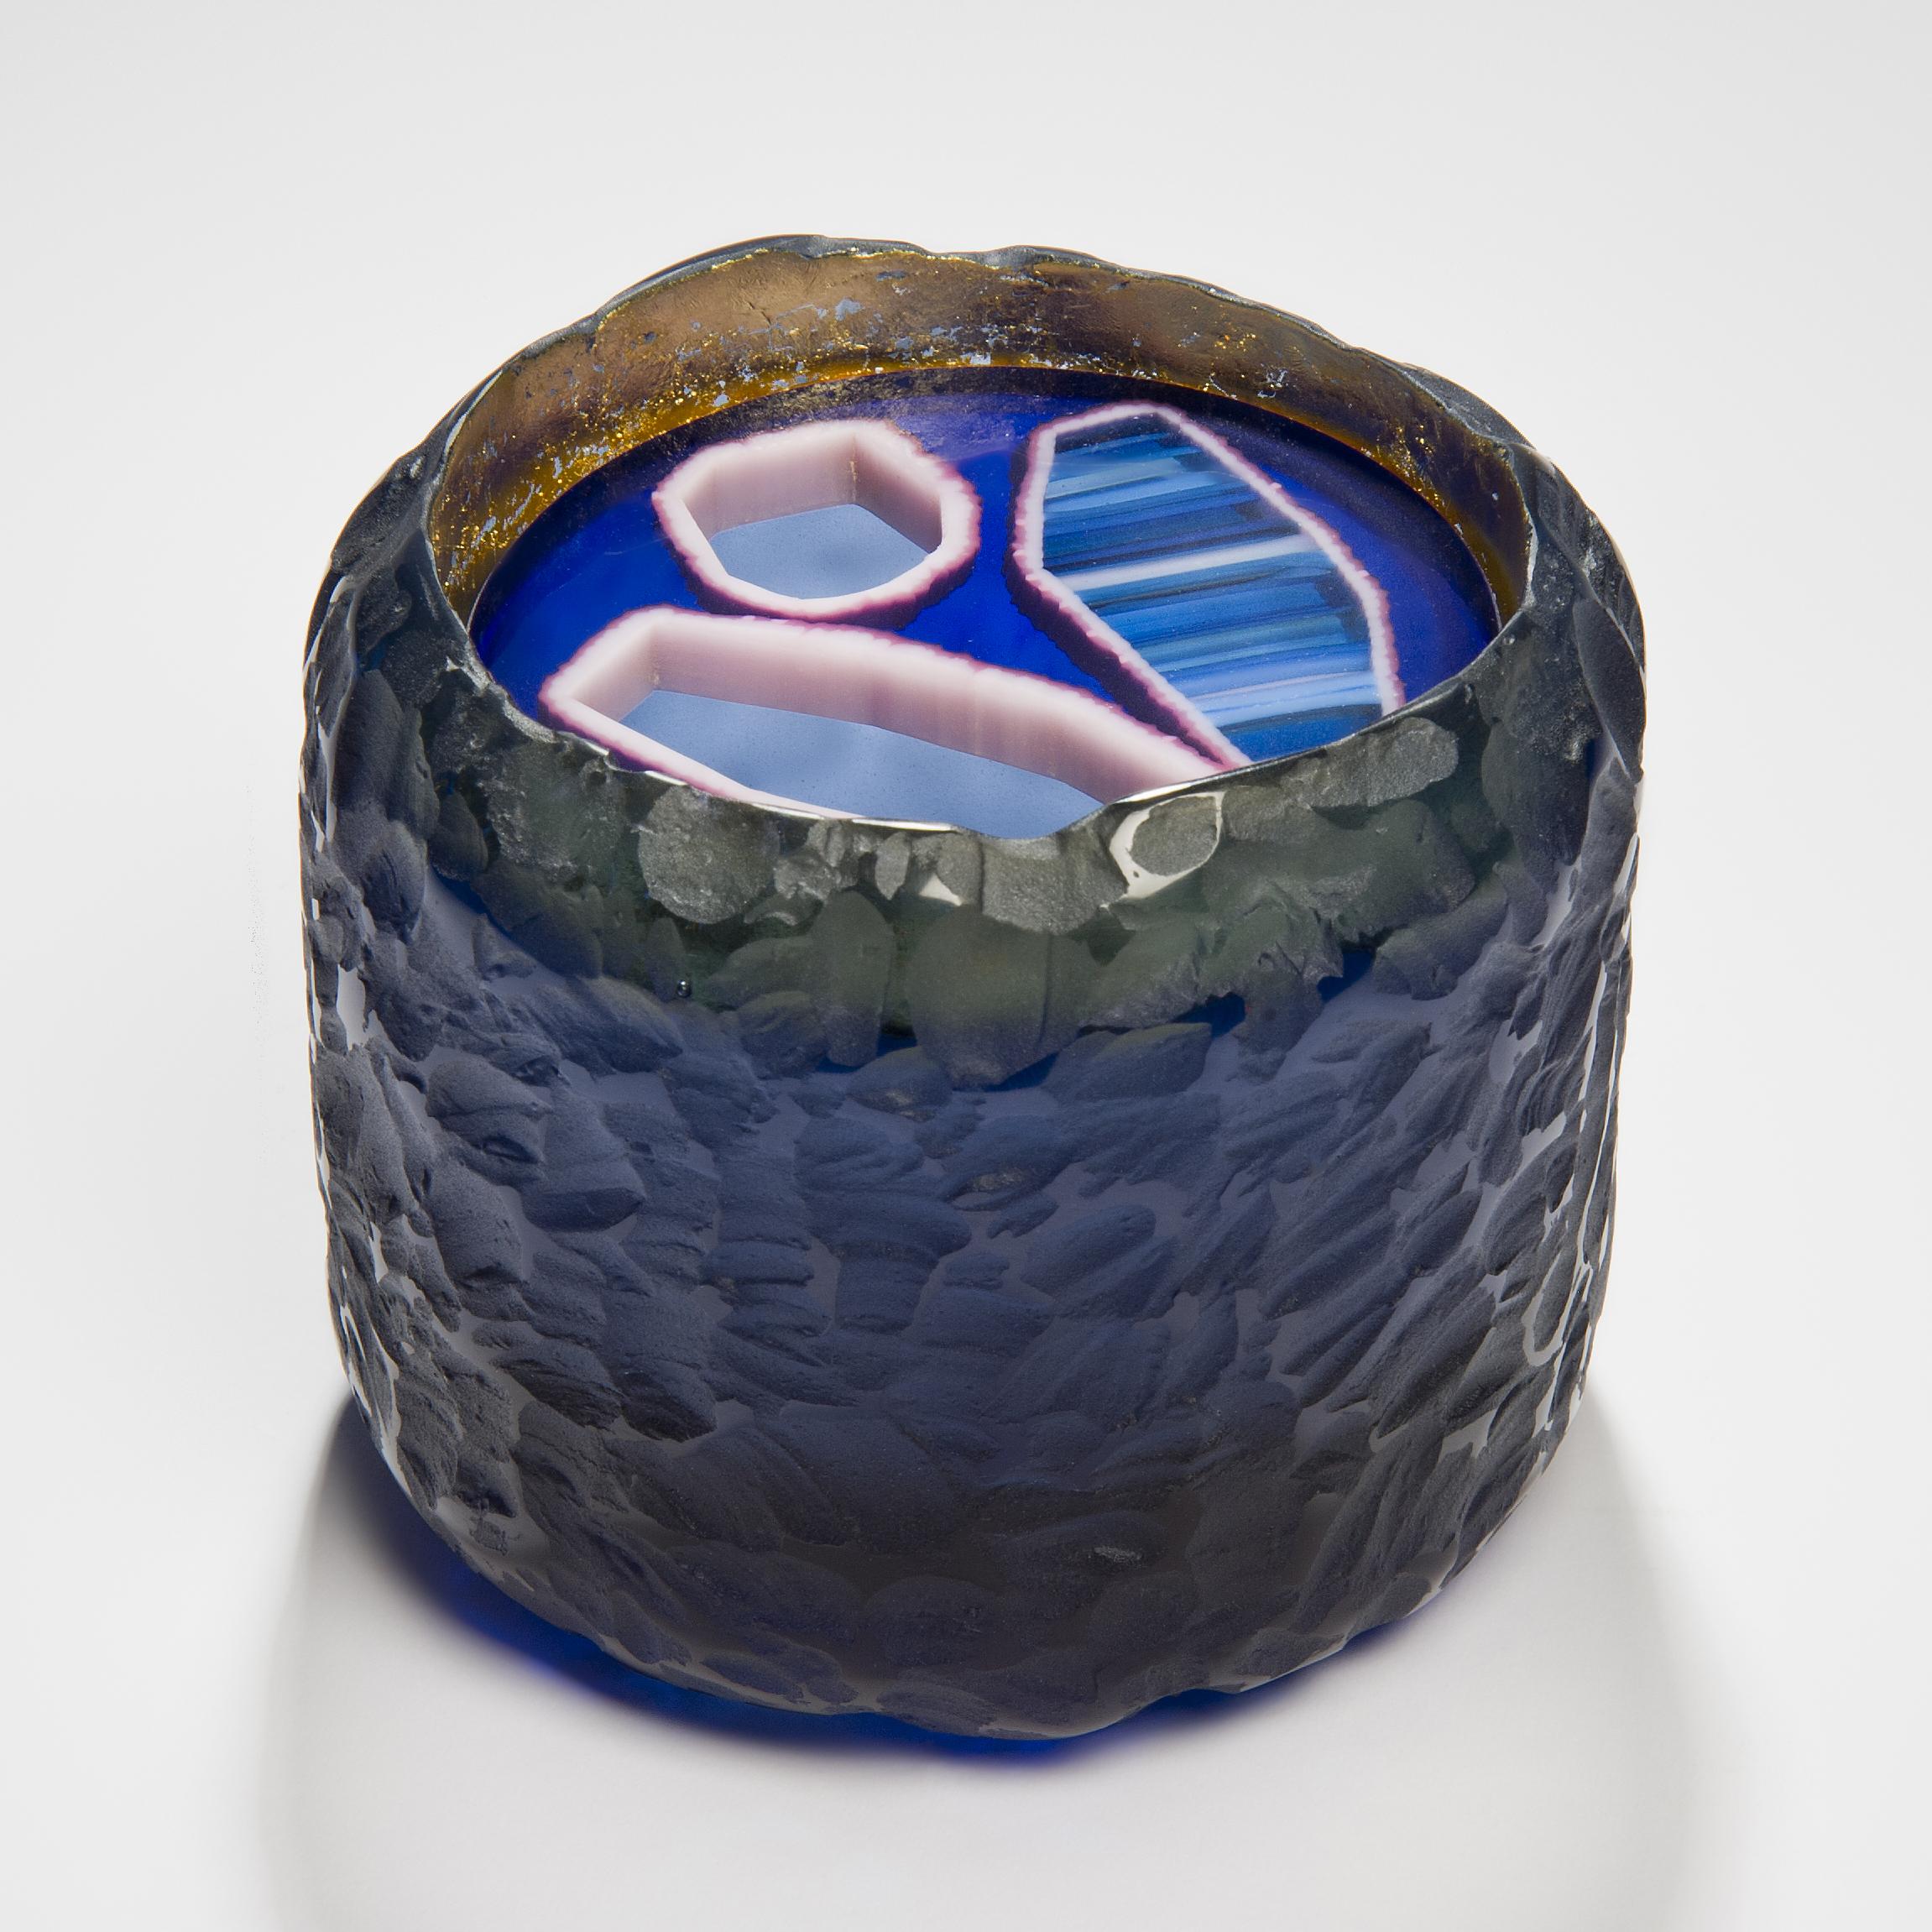 Der Topaz Murini Achat Krug ist eine einzigartige blaue, lila und rosa Skulptur / Krug Kunstwerk aus gegossenem Glas von der britischen Künstlerin Angela Jarman erstellt. Der Sockel ist im Wachsausschmelzverfahren aus blauem Bleikristall gegossen.